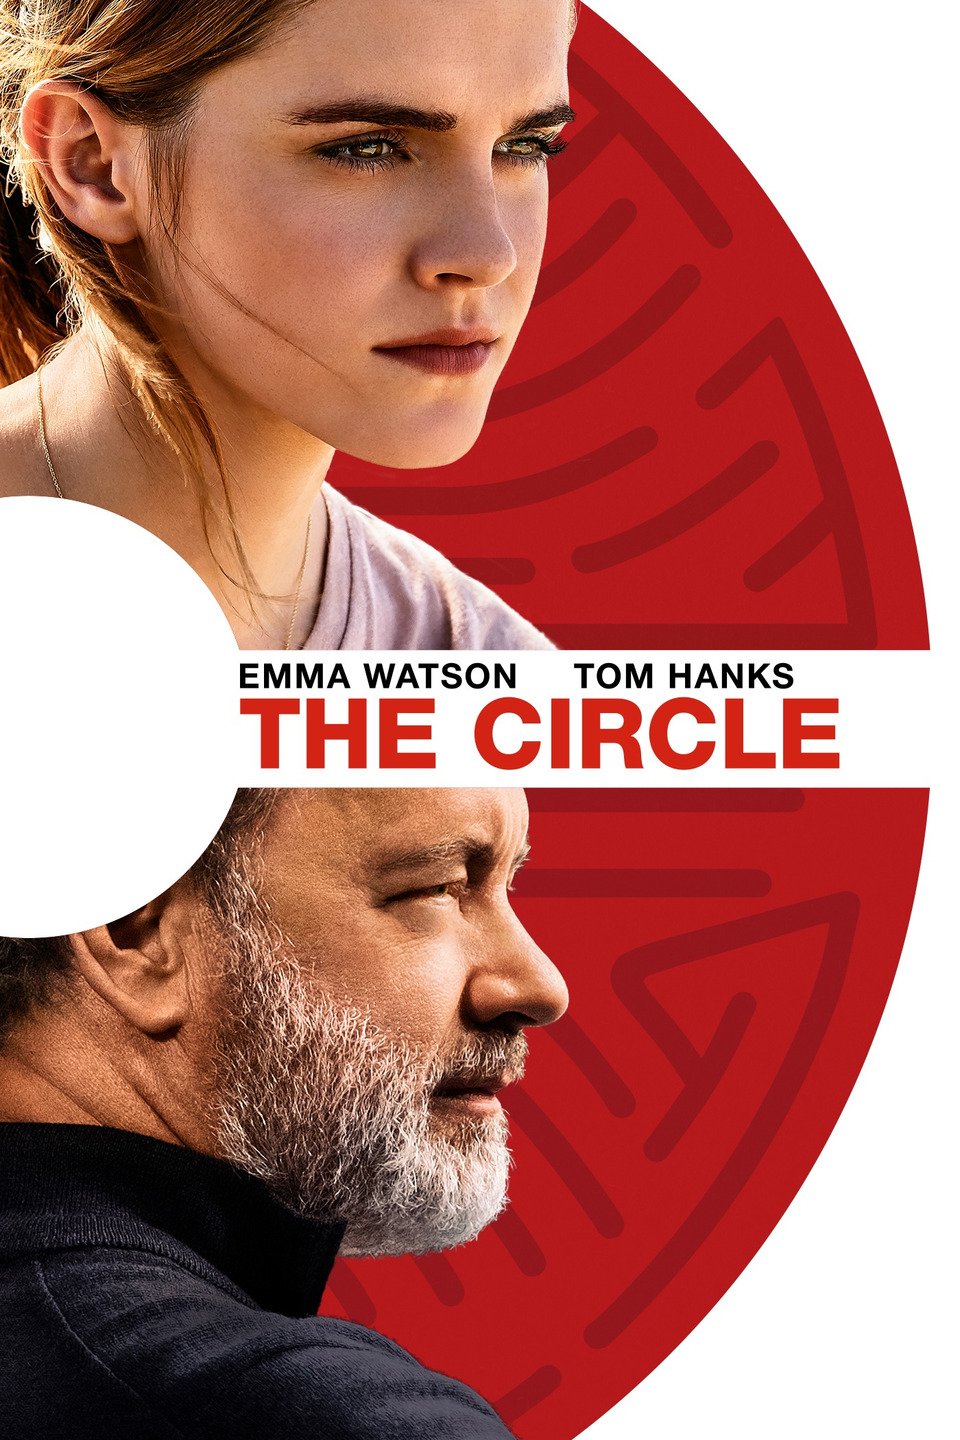 [MINI Super-HQ] The Circle (2017) เดอะ เซอร์เคิล [1080p] [พากย์ไทย 5.1 + เสียงอังกฤษ 5.1] [บรรยายอังกฤษ] [เสียงไทย + ซับอังกฤษ]